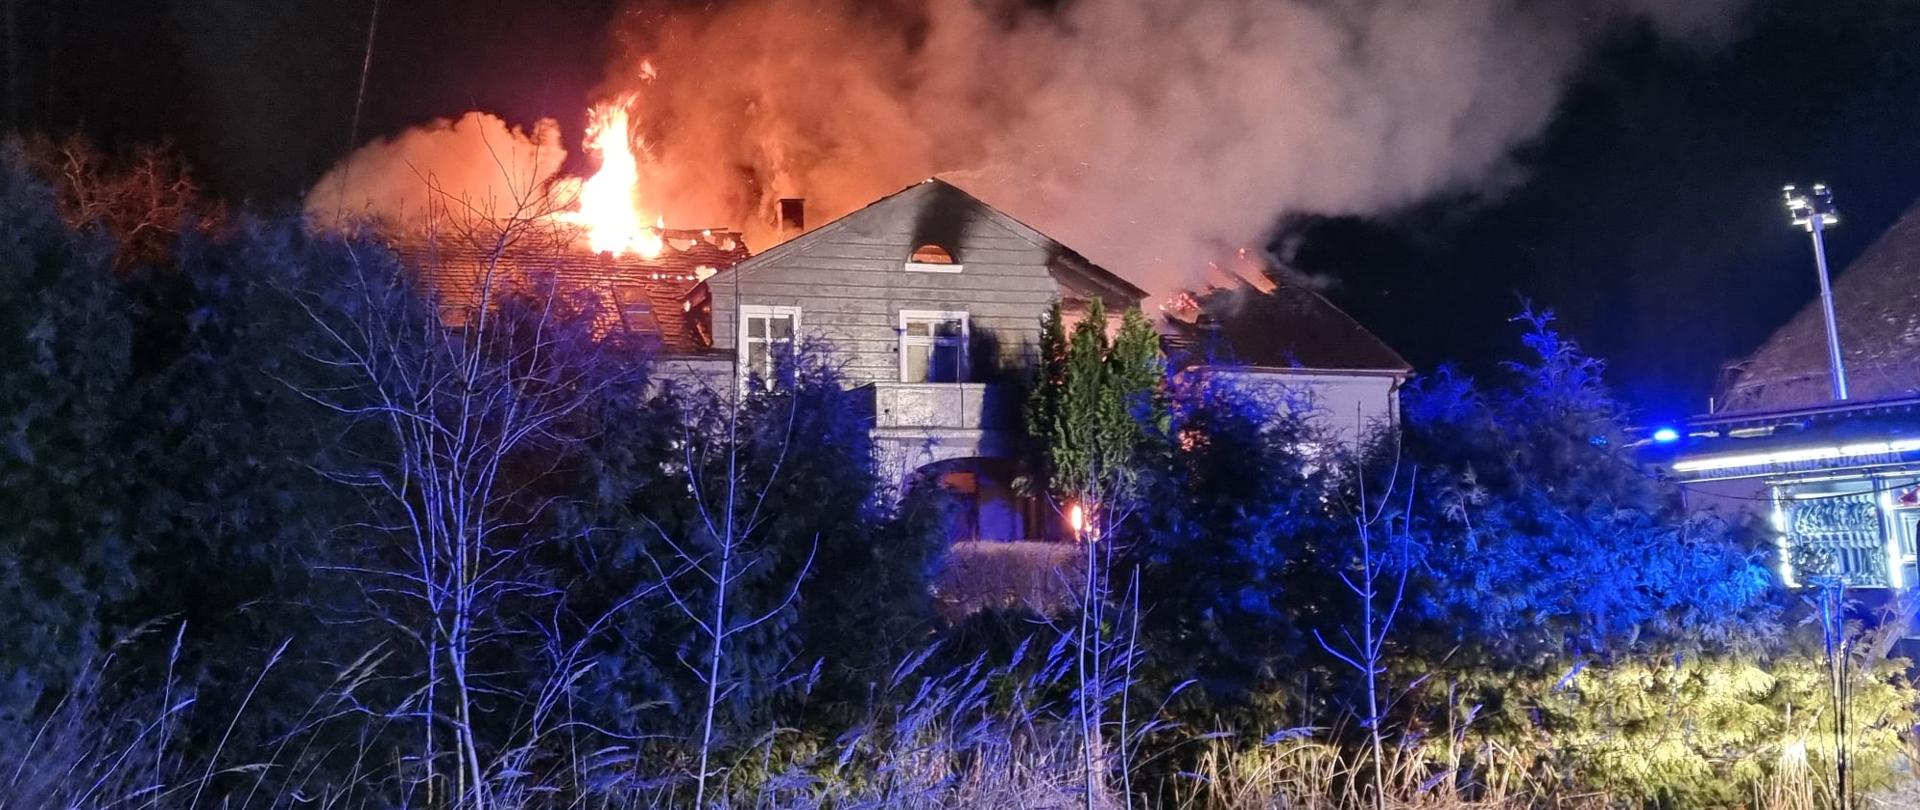 Wiidoczny na zdjęciu pożar dachu budynku mieszkalnego